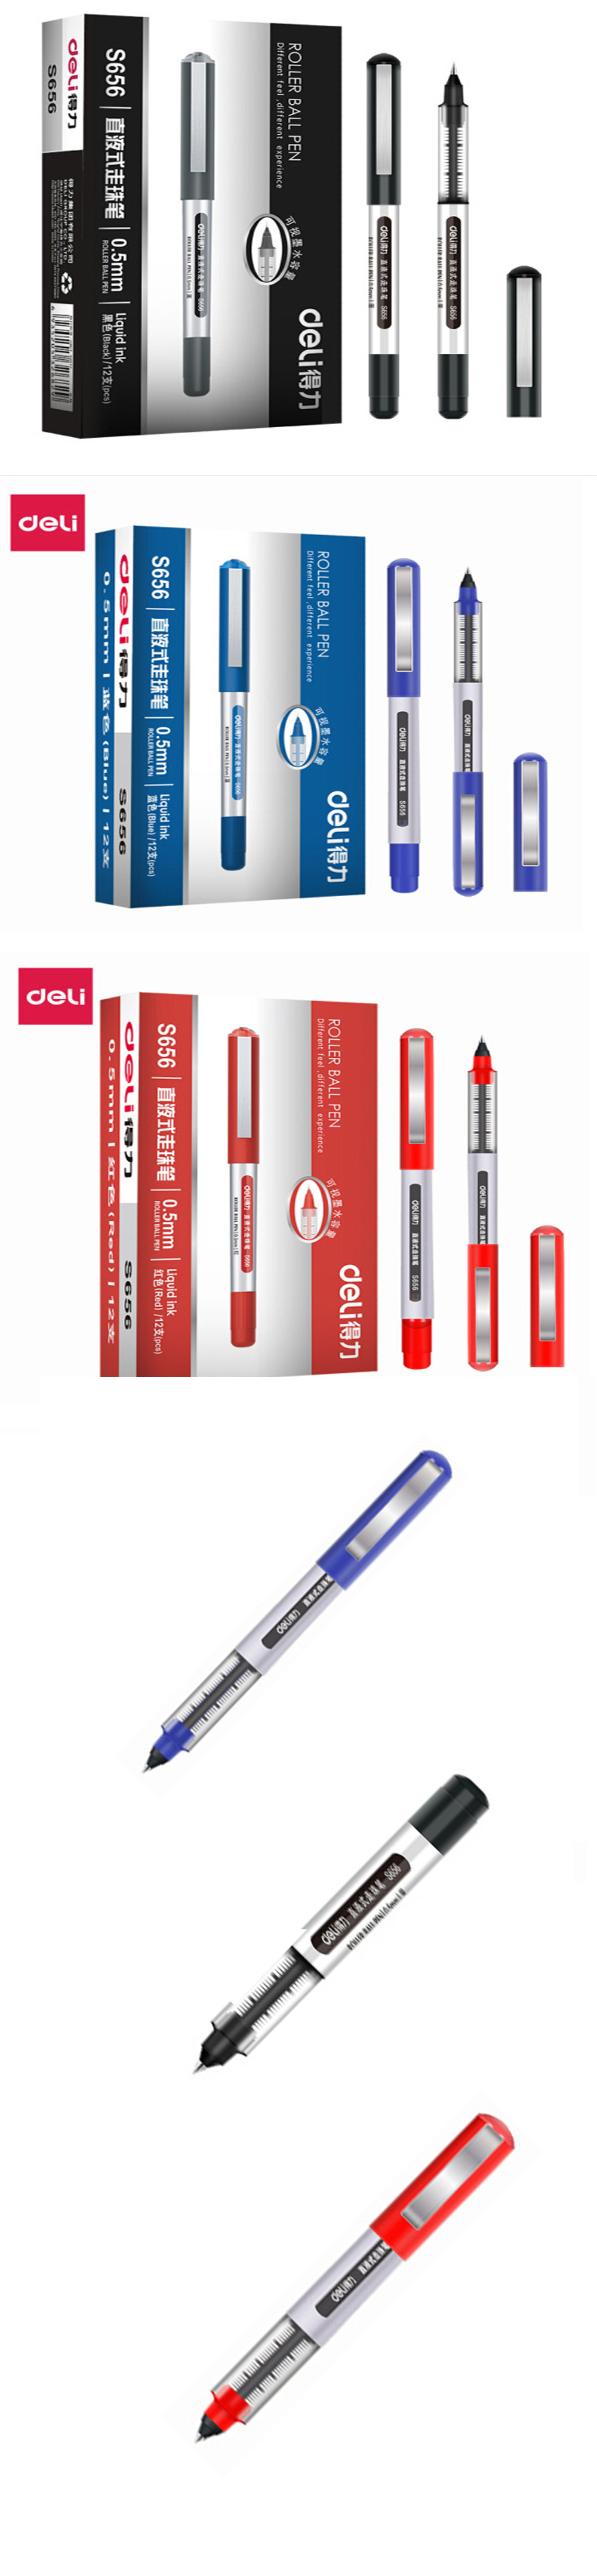 12PCS Deli S656 Straight Liquid Gel Pen Liquid Ballpoint Pen 0.5mm Nib Gel Pen Writing Signing Pen Offfice School Supplies Stationery